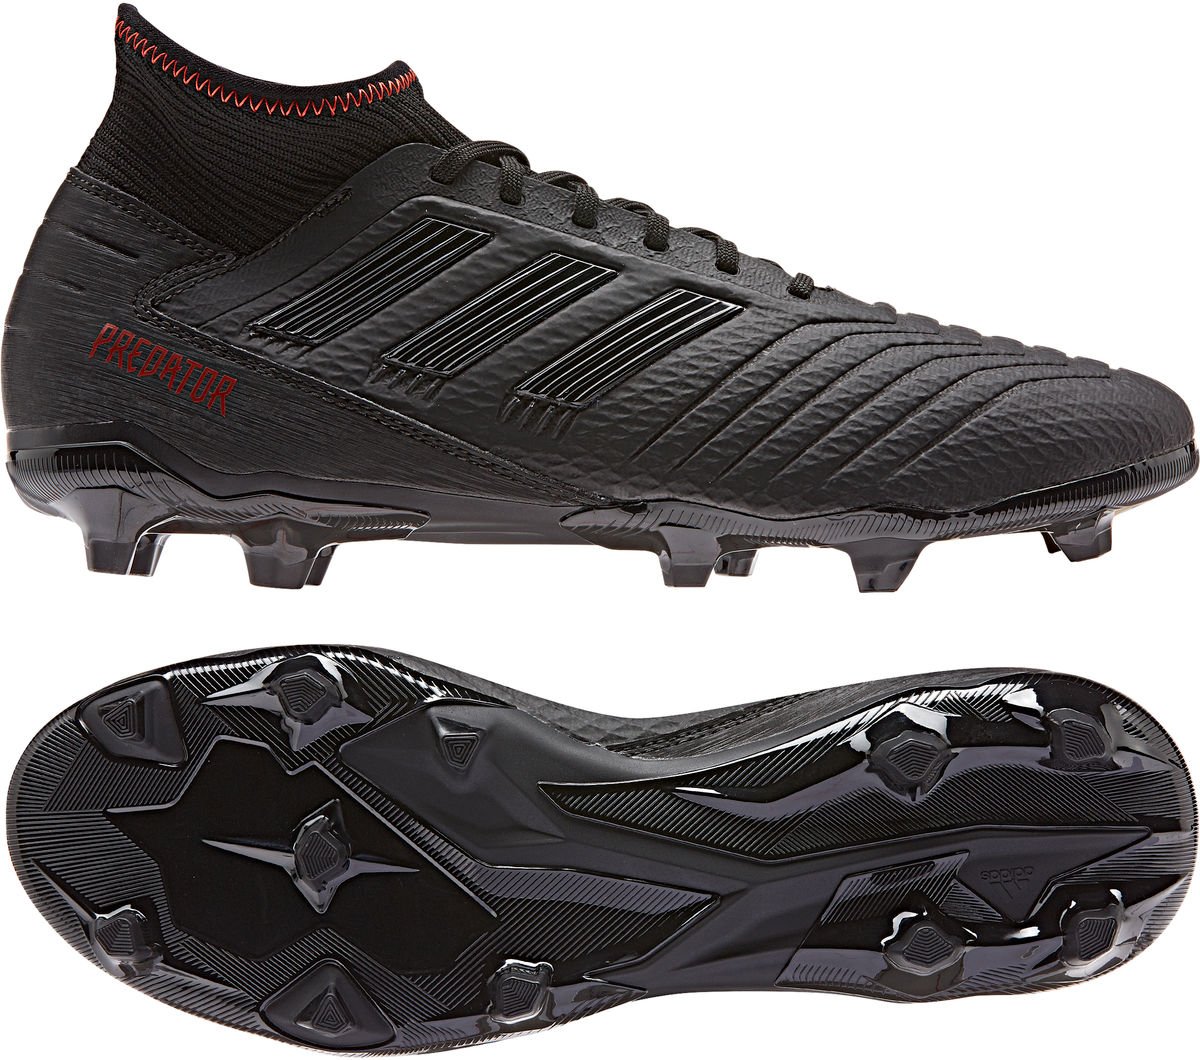 Football shoes adidas PREDATOR 19.3 FG 